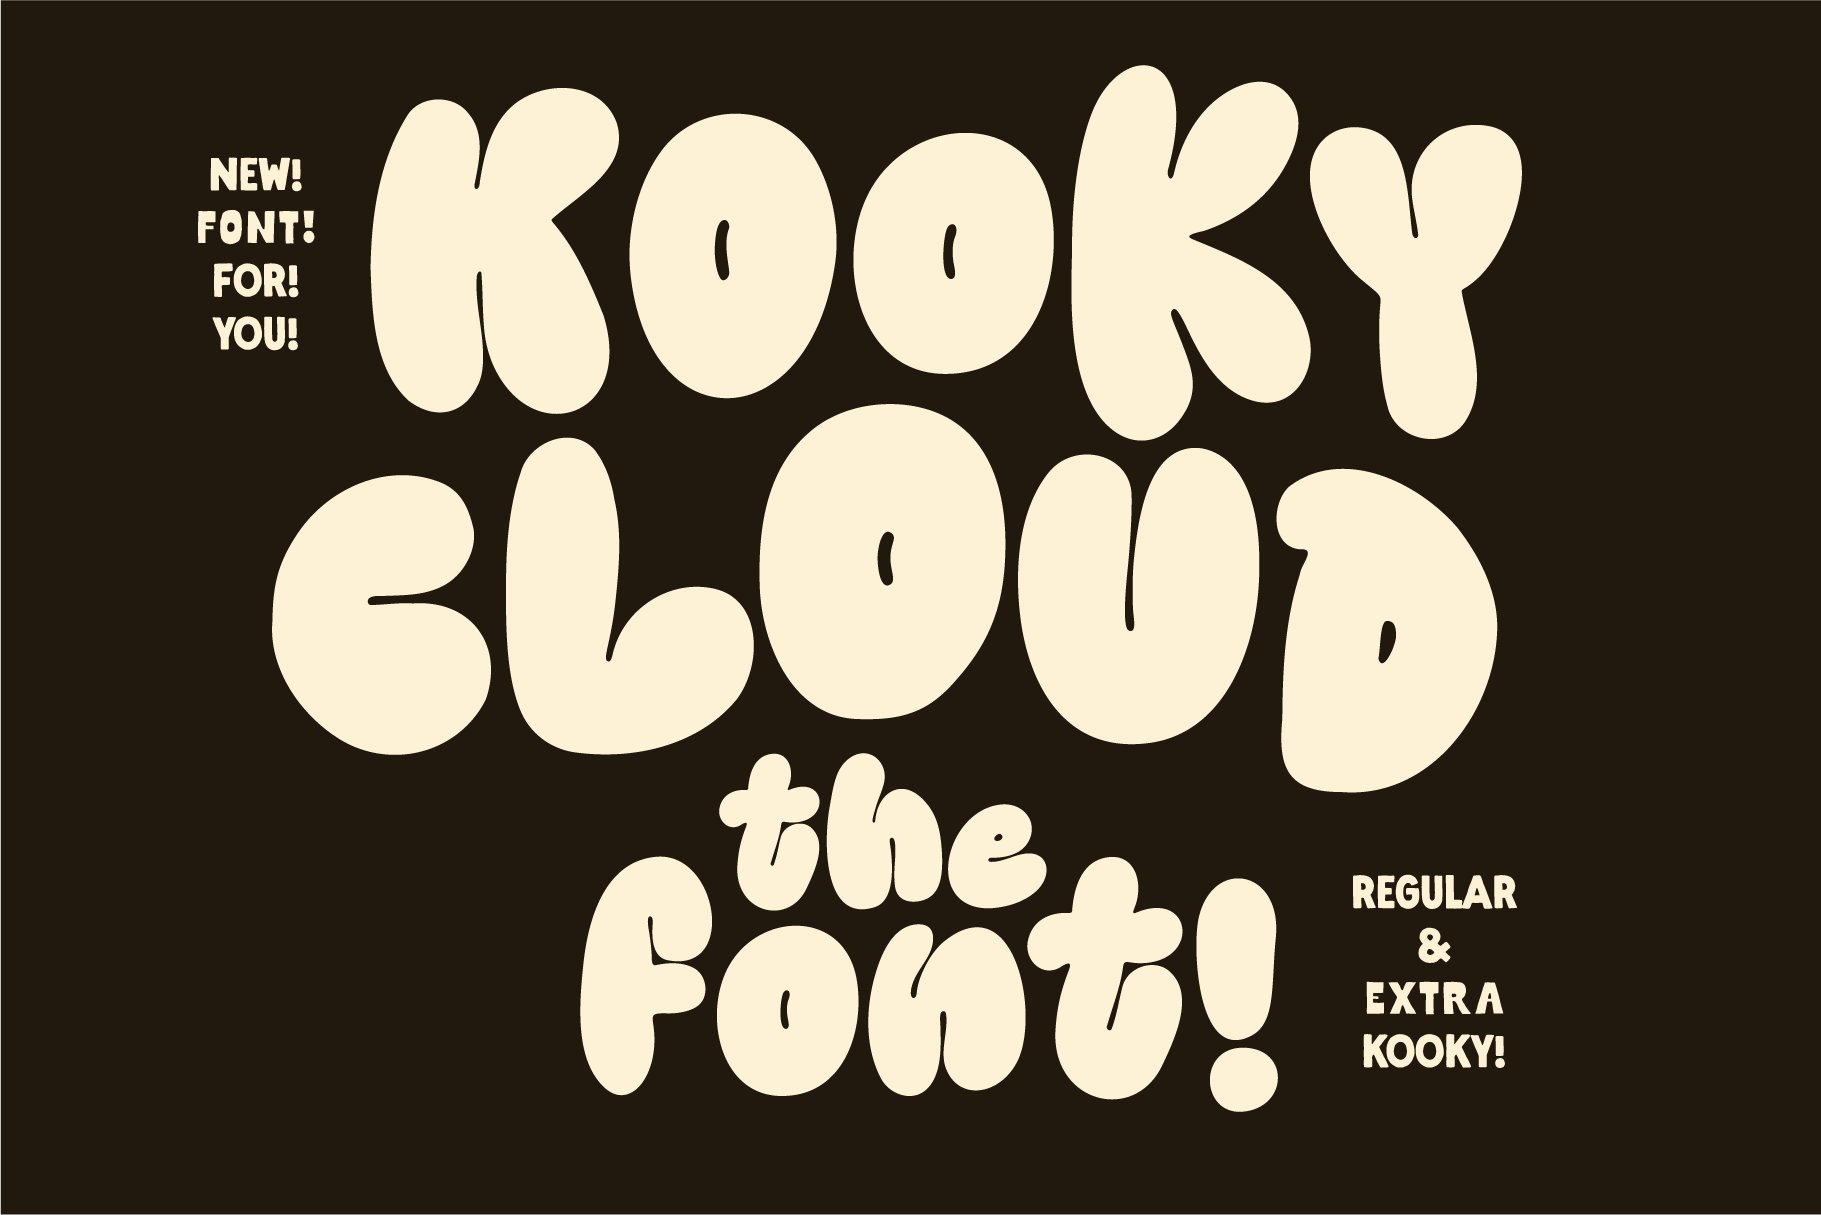 Kooky Cloud! Unique Bold Bubble Font cover image.